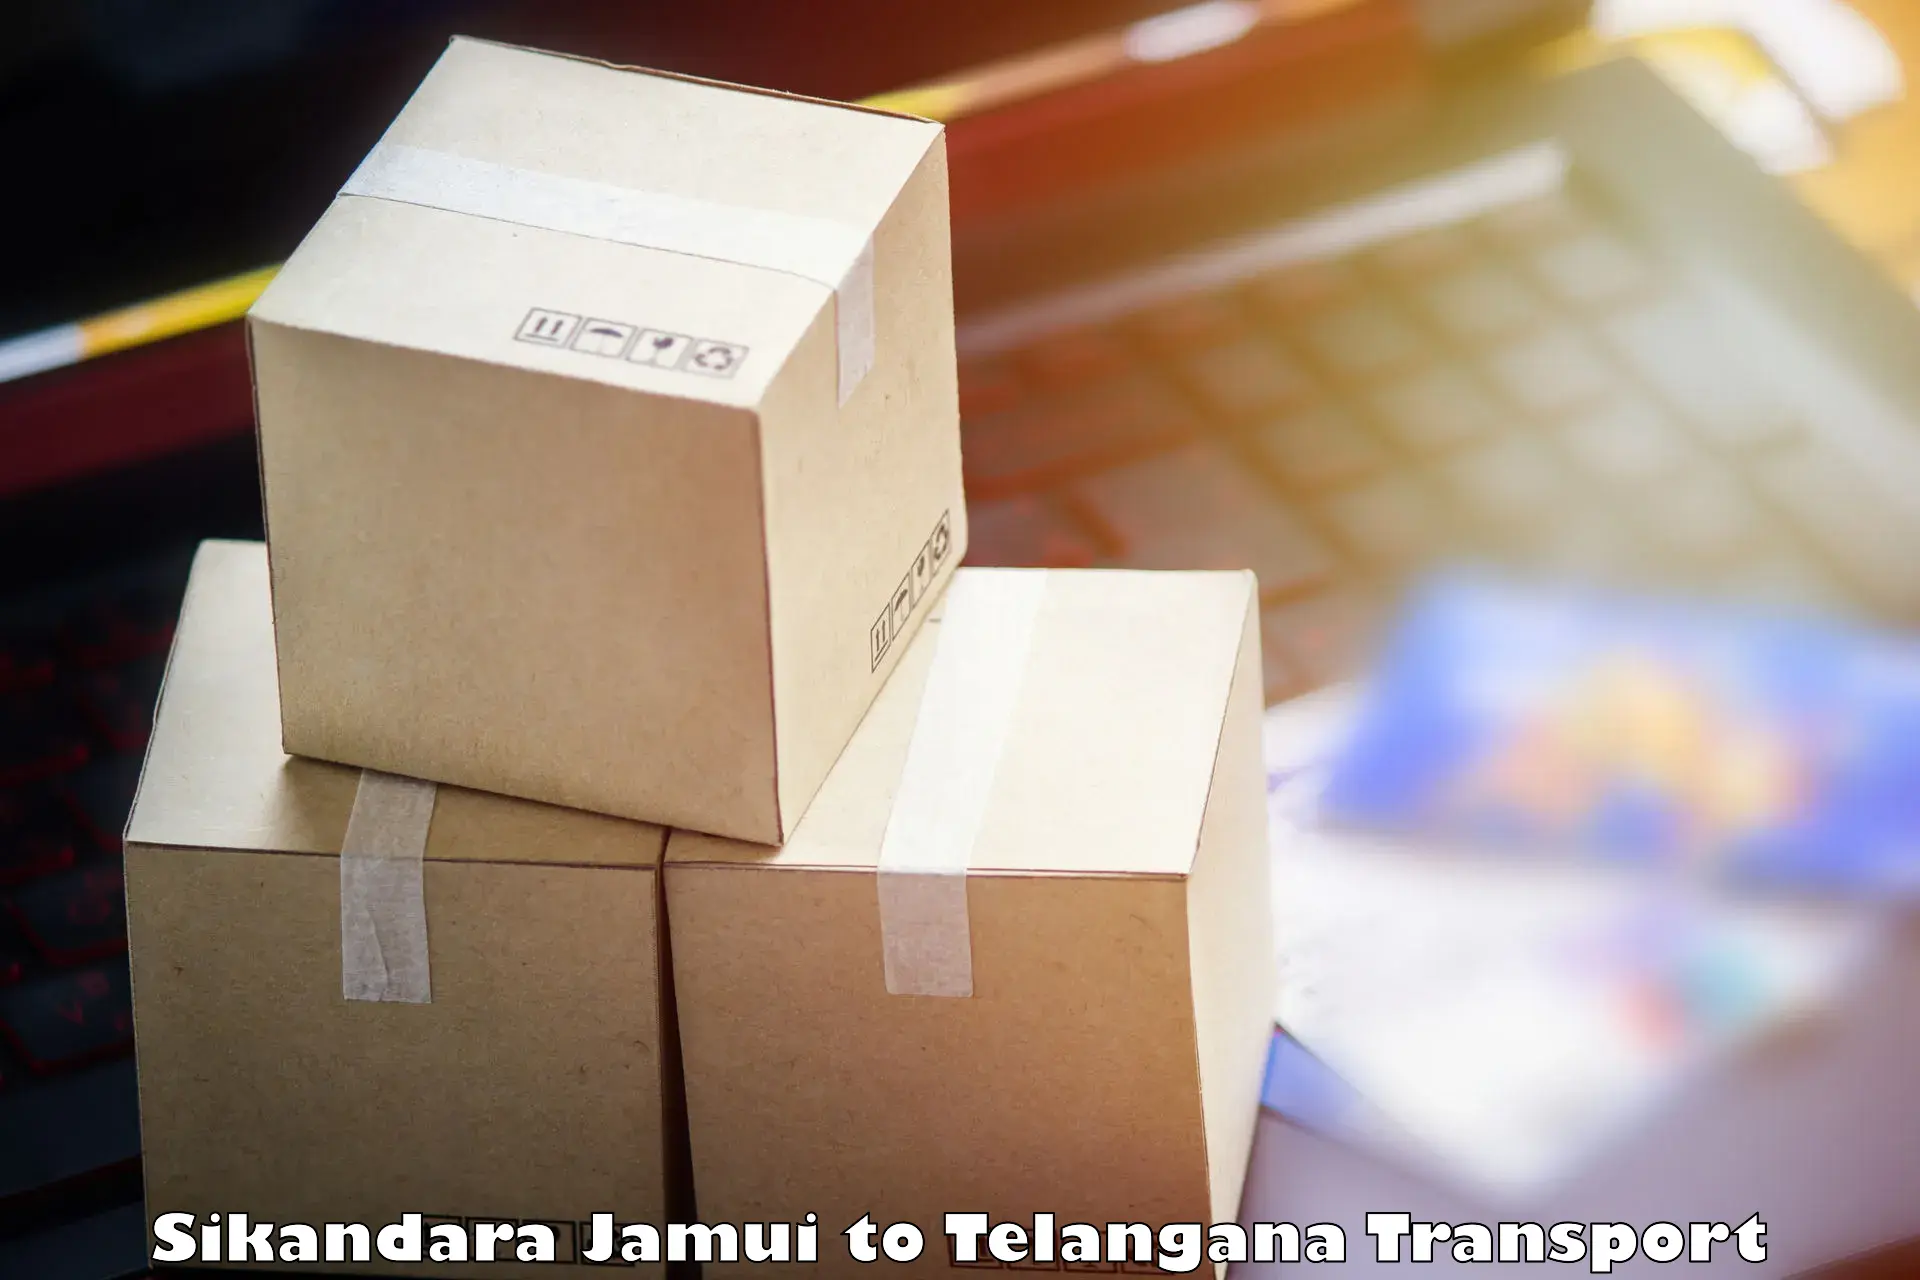 Online transport booking Sikandara Jamui to Karimnagar